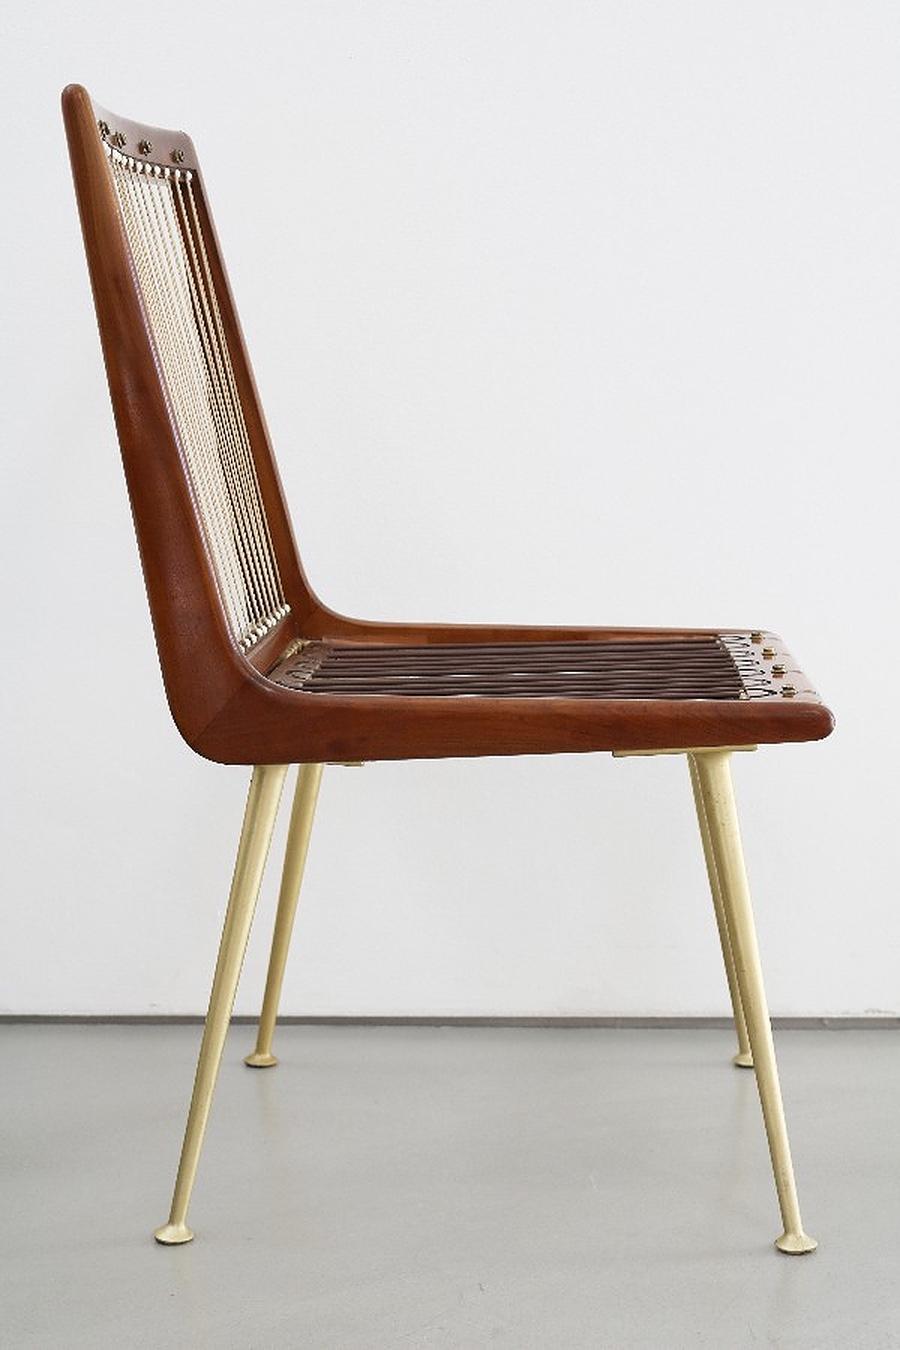 Seltener Boomerang-Stuhl in gutem Zustand mit geringen Gebrauchsspuren. Der Stuhl wird mit den originalen Sitz- und Rückenpolstern geliefert:: die leichte Gebrauchsspuren aufweisen.